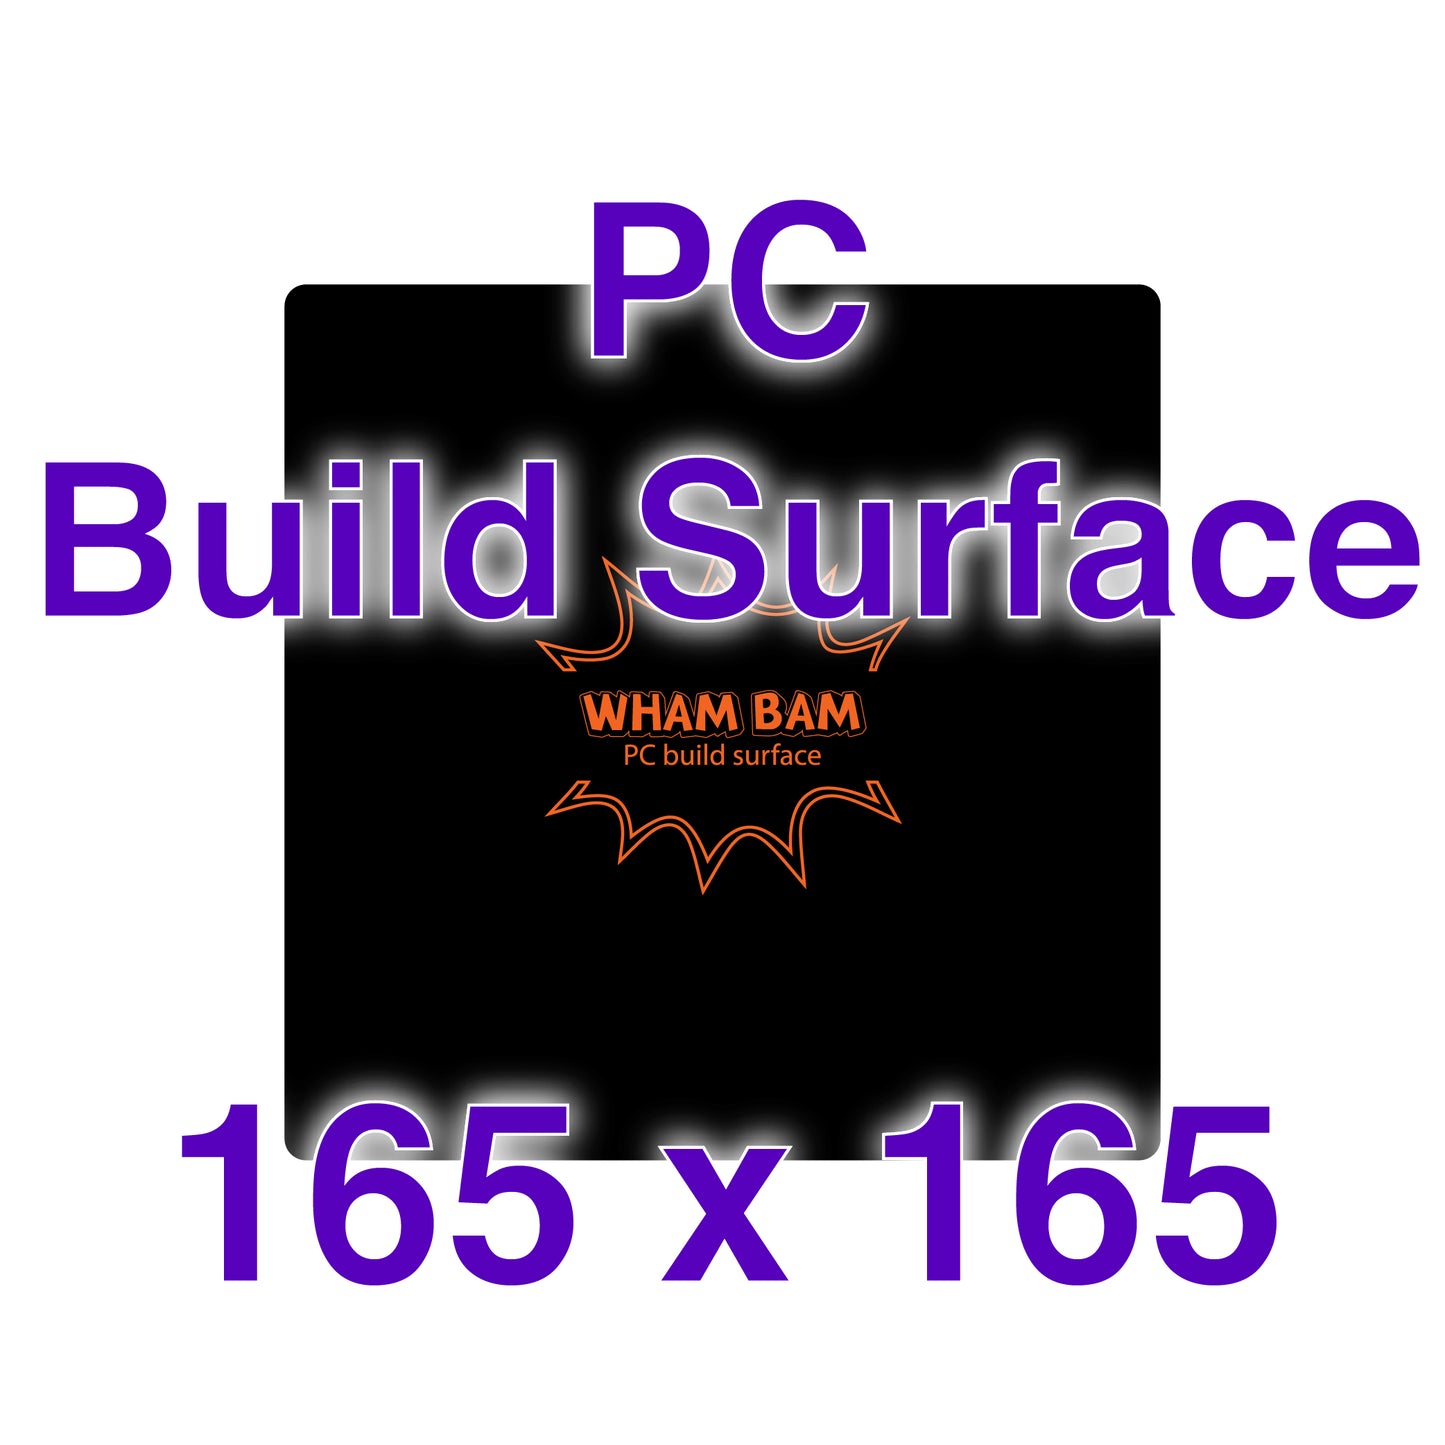 PC Build Surface - 165 x 165